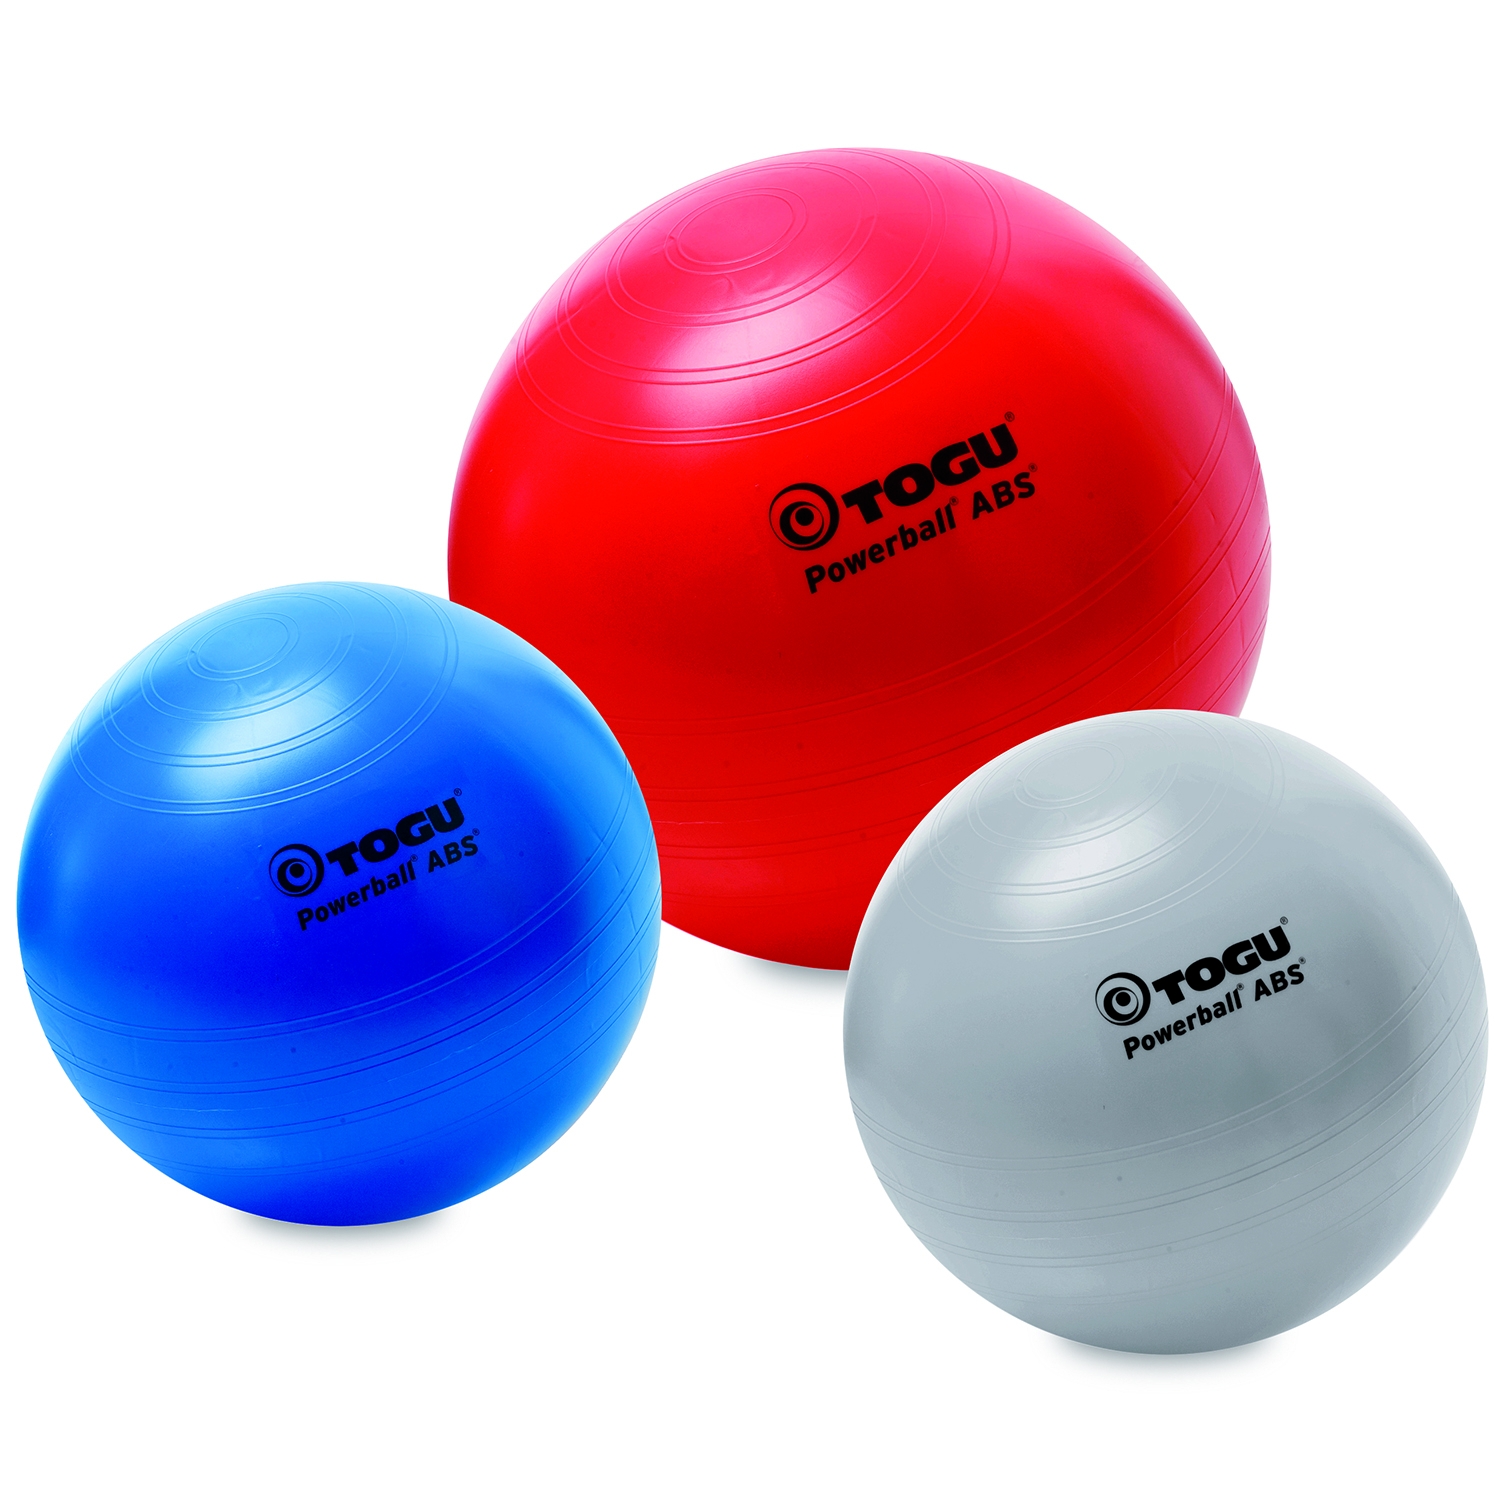 Togu Powerball ABS - ballon siège